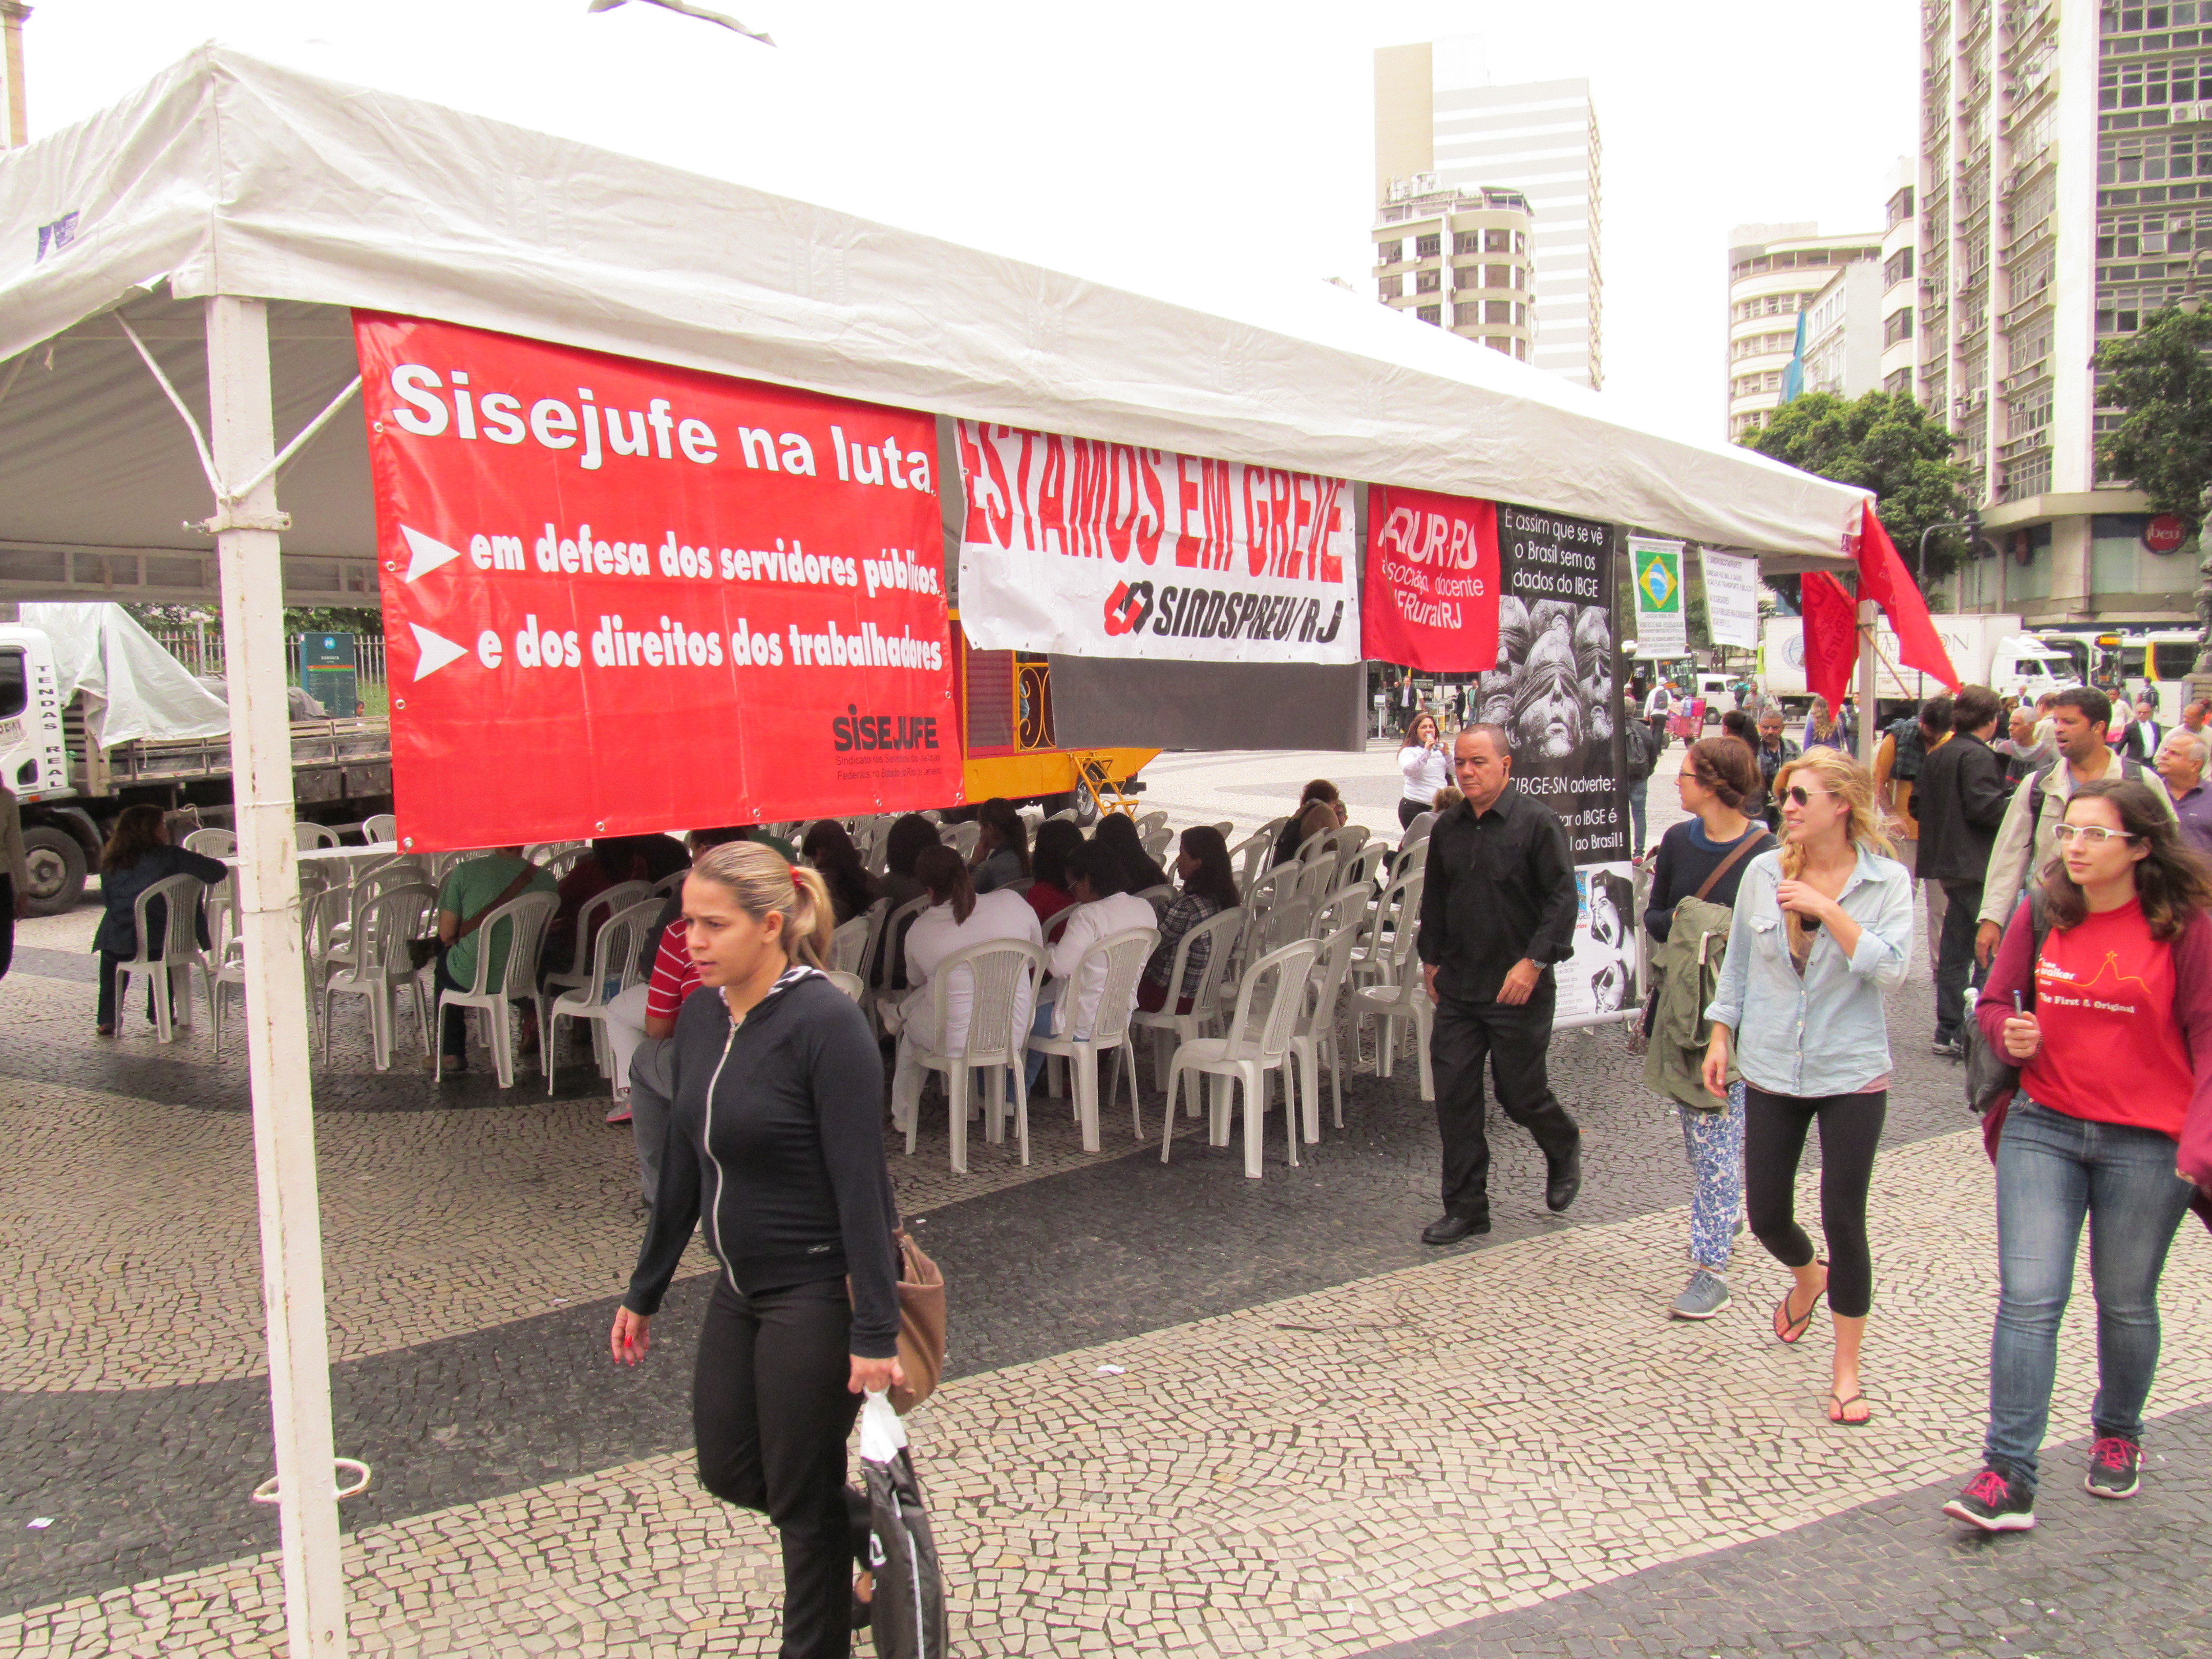 Sisejufe participa de Ato do Fórum dos Servidores Federais do Rio de Janeiro em defesa dos serviços públicos e dos direitos dos trabalhadores nesta sexta-feira, SISEJUFE